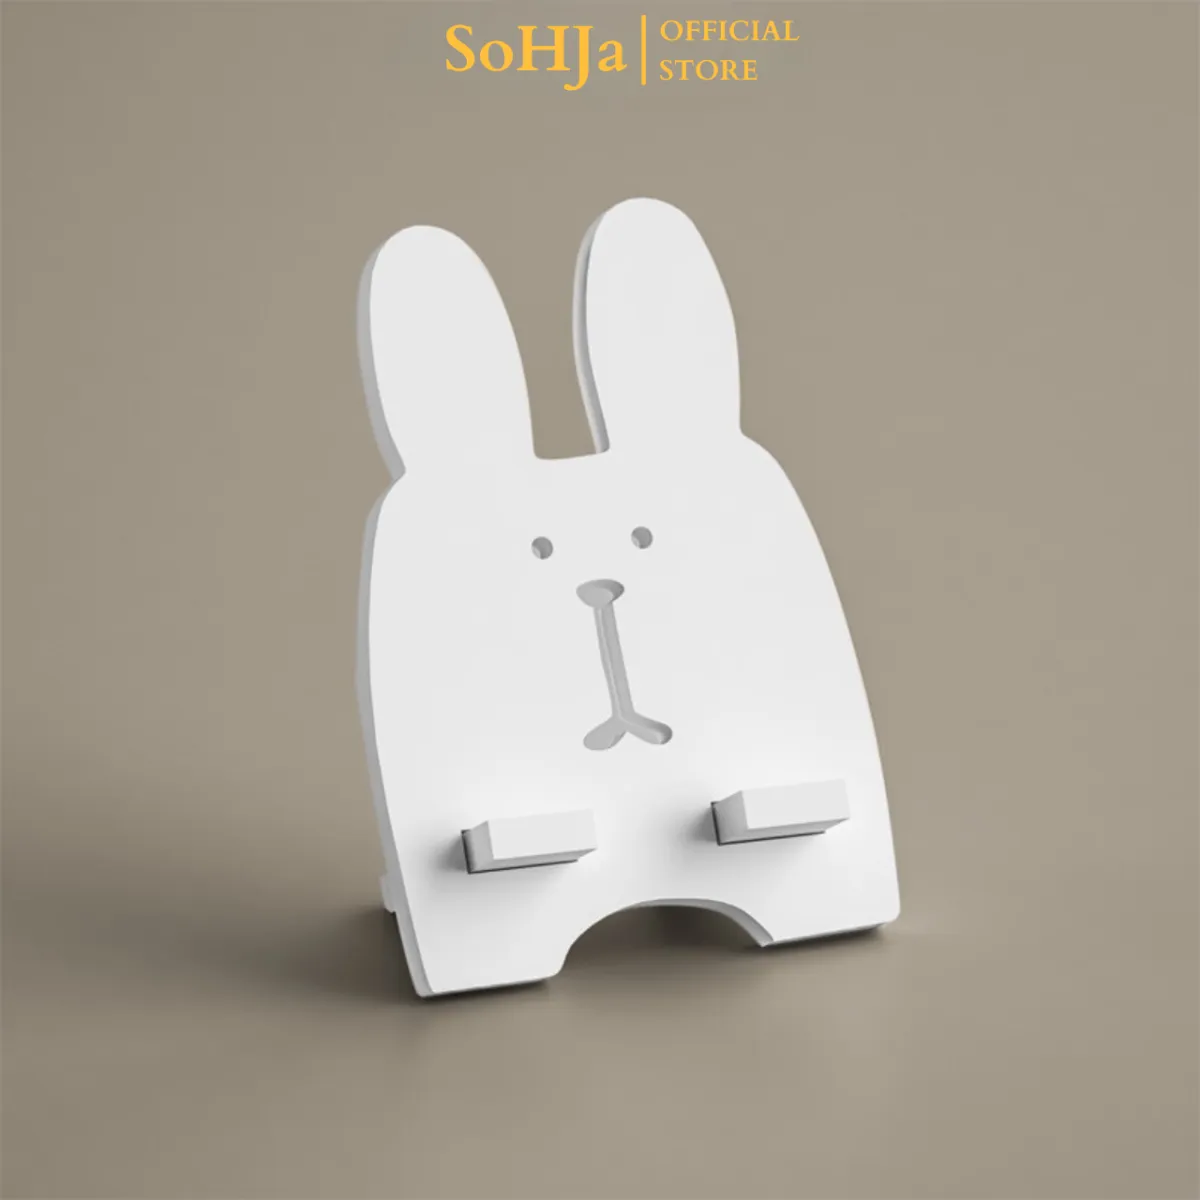 Kệ điện thoại SoHJa hình con thỏ bằng gỗ pvc dễ thương - SG378 ...